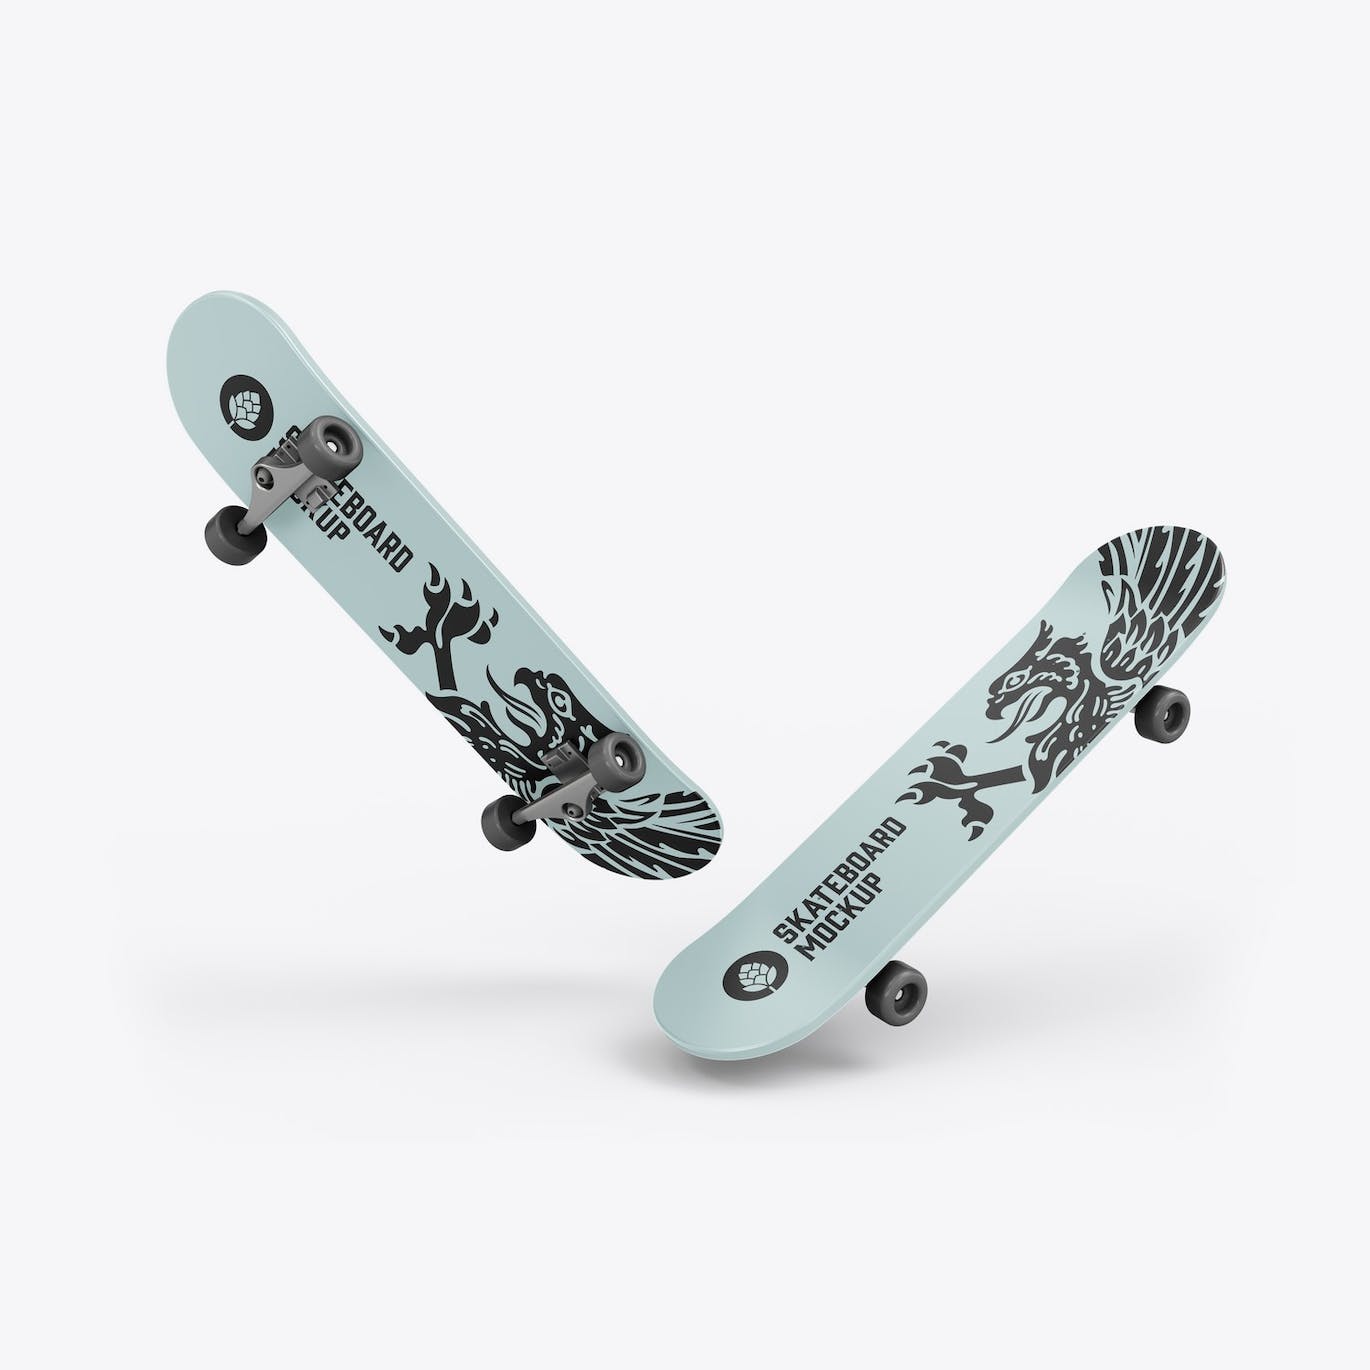 骑行滑板品牌设计样机 Skateboard Mockup 样机素材 第3张